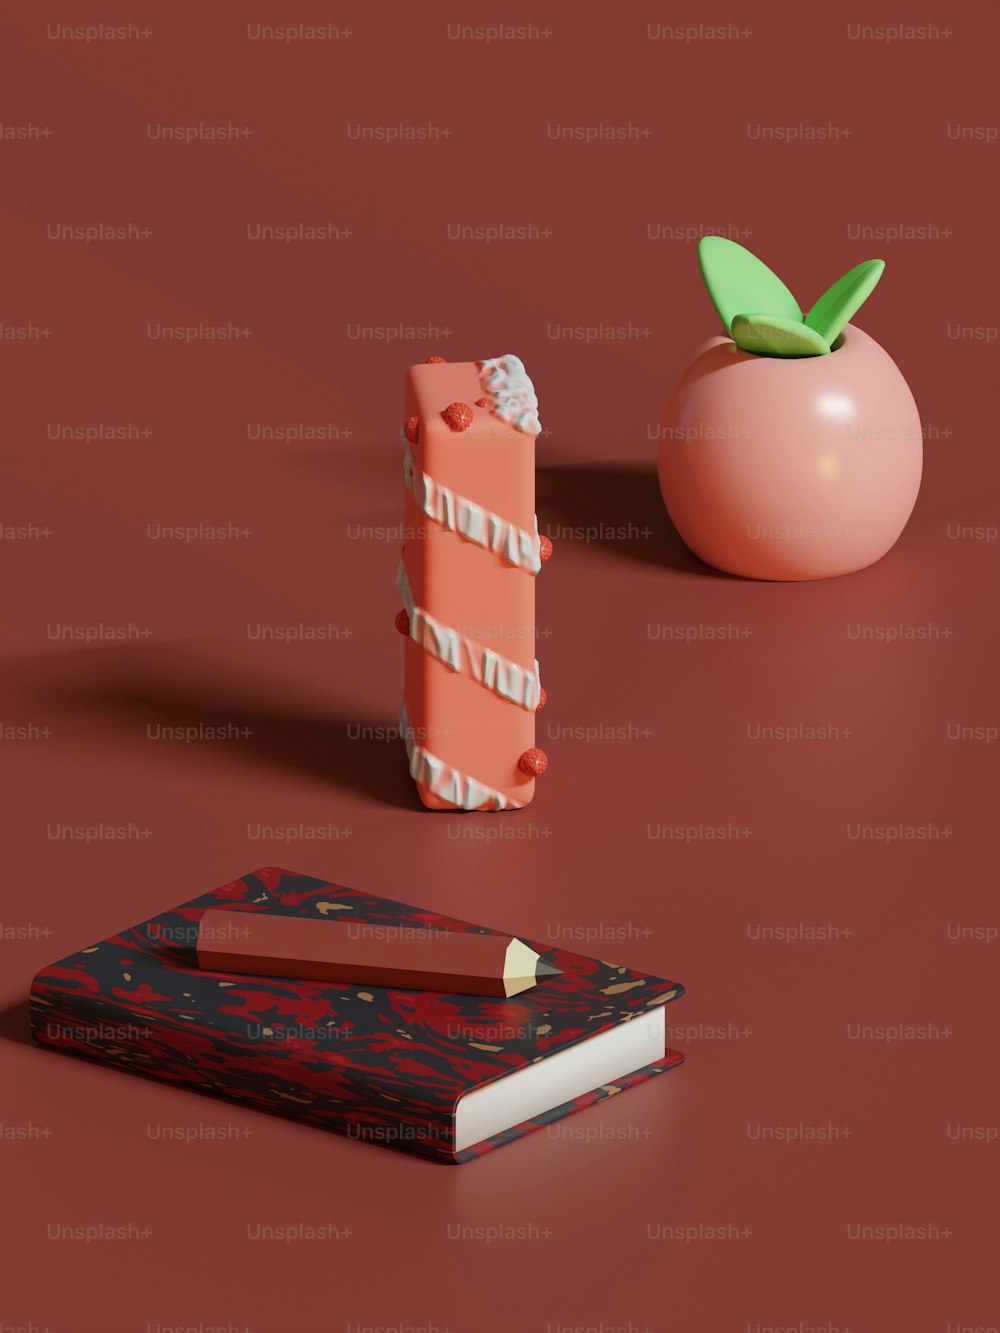 Un tomate y un libro sobre una superficie roja